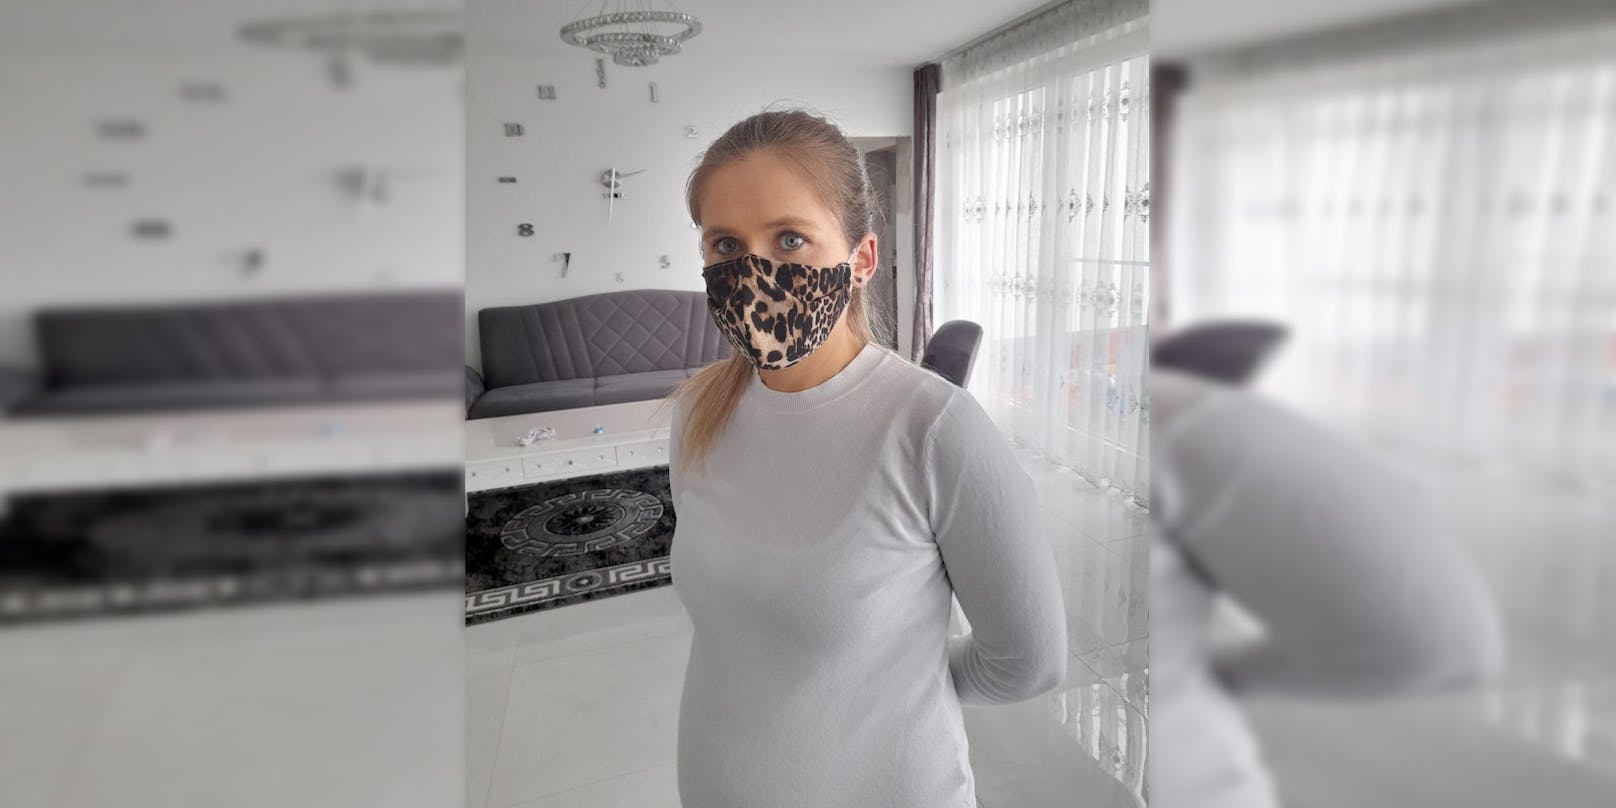 Patrycja (30) wurde aus einem Geschäft geschmissen, weil sie keine FFP2-Maske trug.